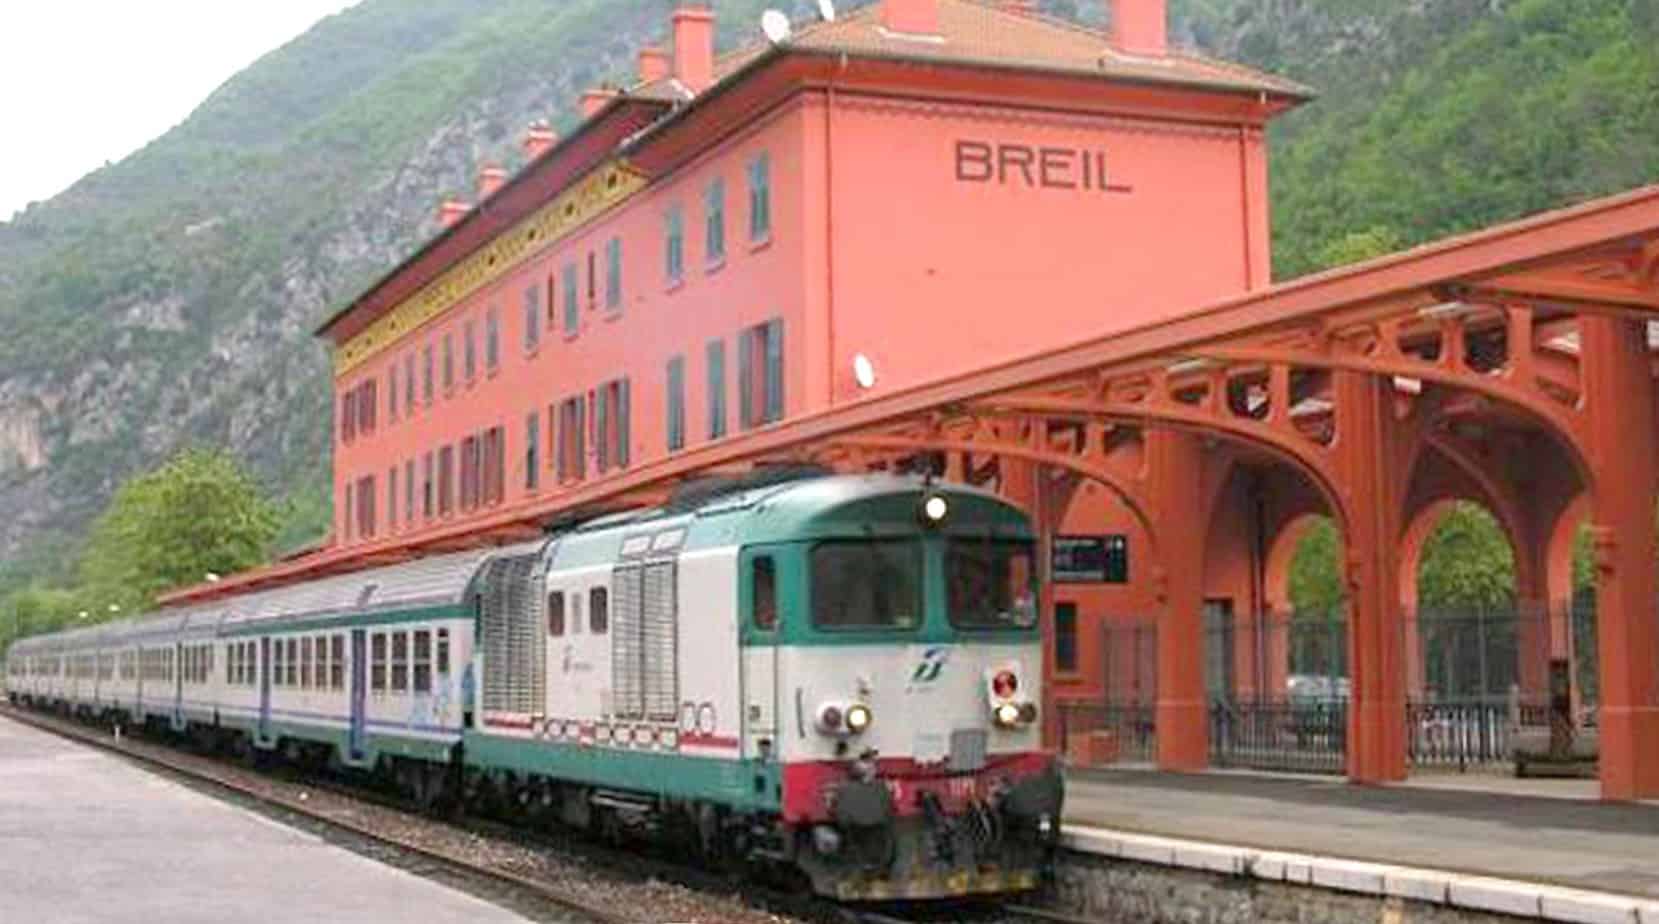 La ferrovia Cuneo-Limone-Ventimiglia (o linea del Tenda) è stata progettata a fine Ottocento: collega il Capoluogo di Provincia piemontese alla cittadina ligure, passando per il comune di Borgo San Dalmazzo (CN) e attraversando il territorio francese